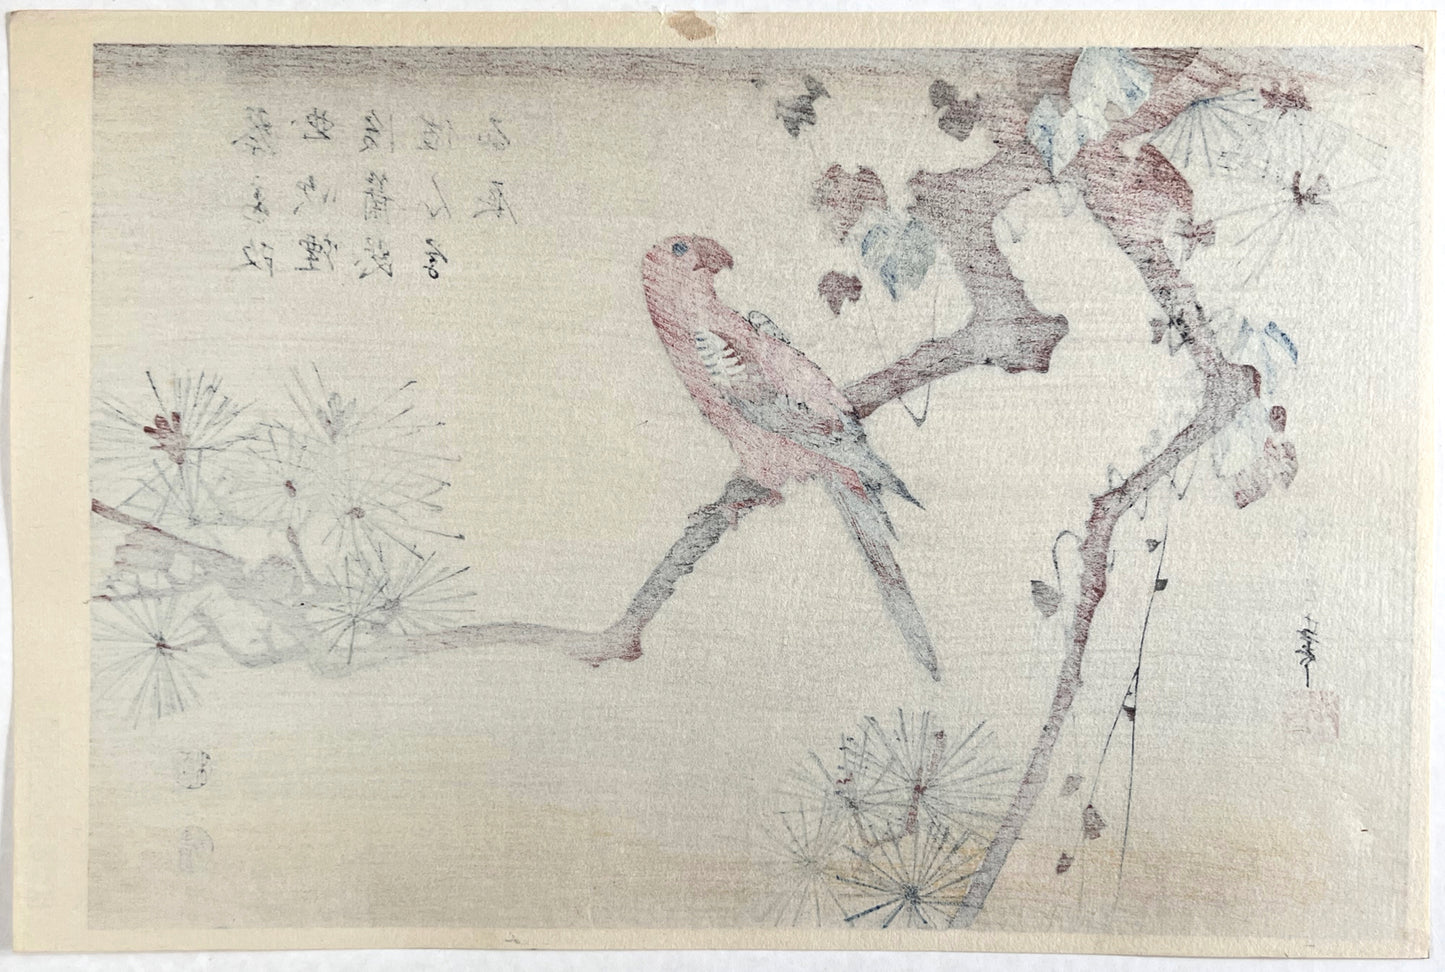 Estampe Japonaise de Hiroshige | Perruche sur une branche de pin dos de l'estampe